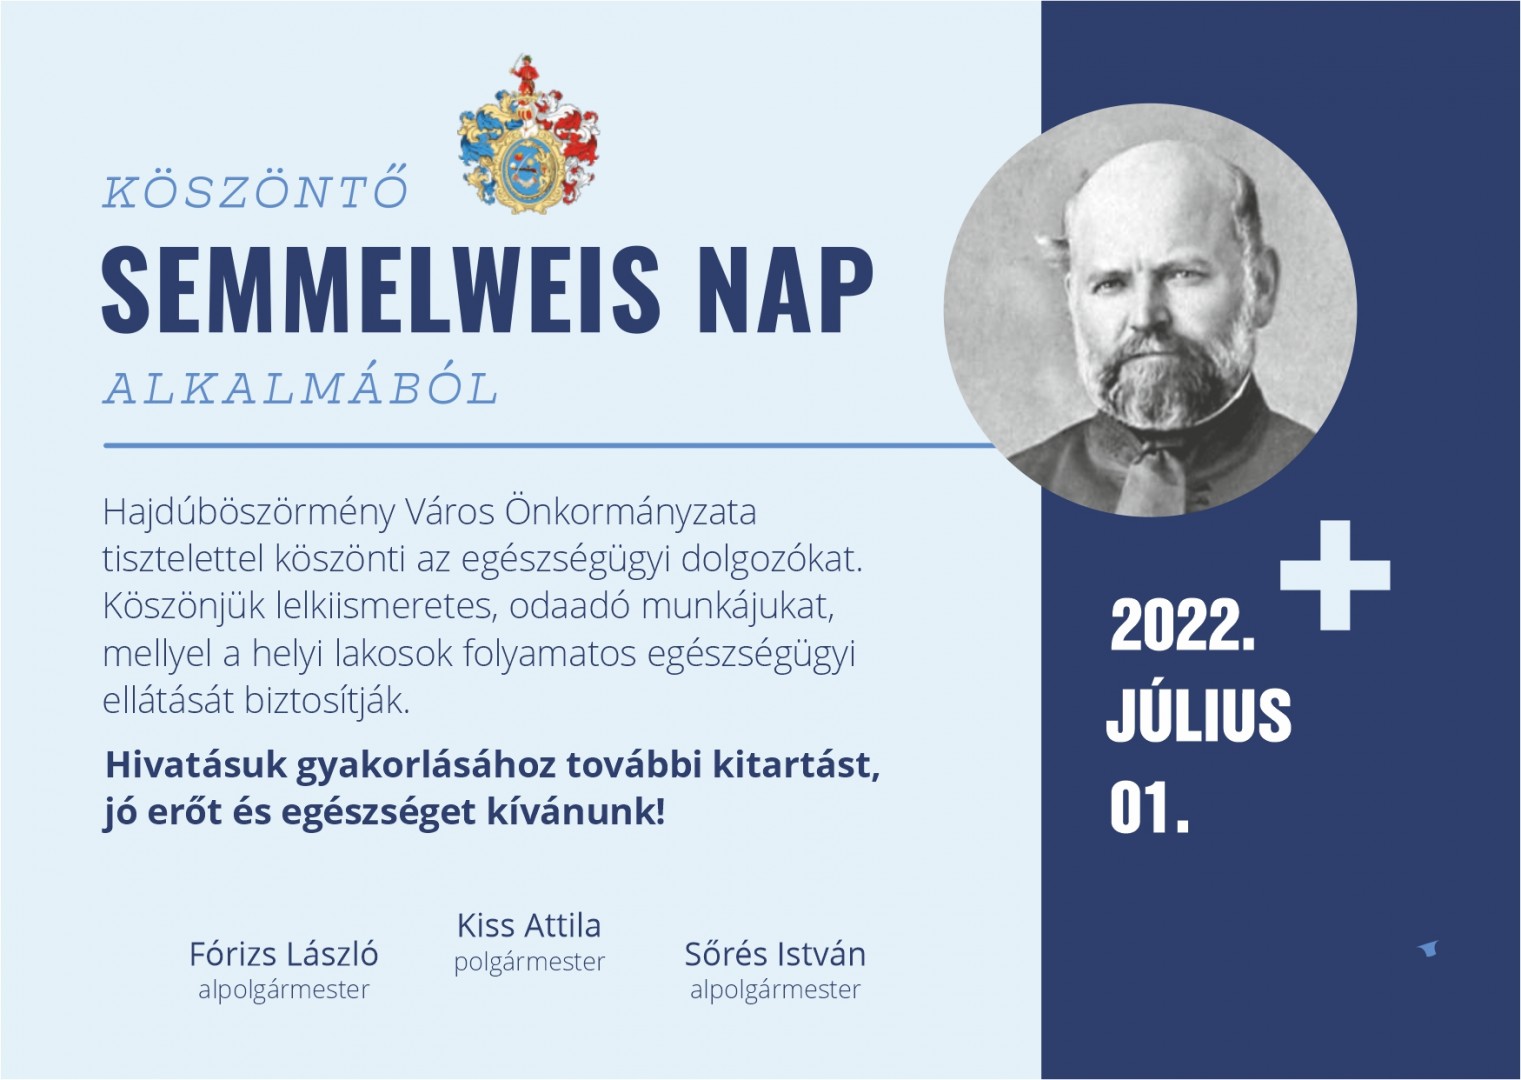 Semmelweis nap 2022